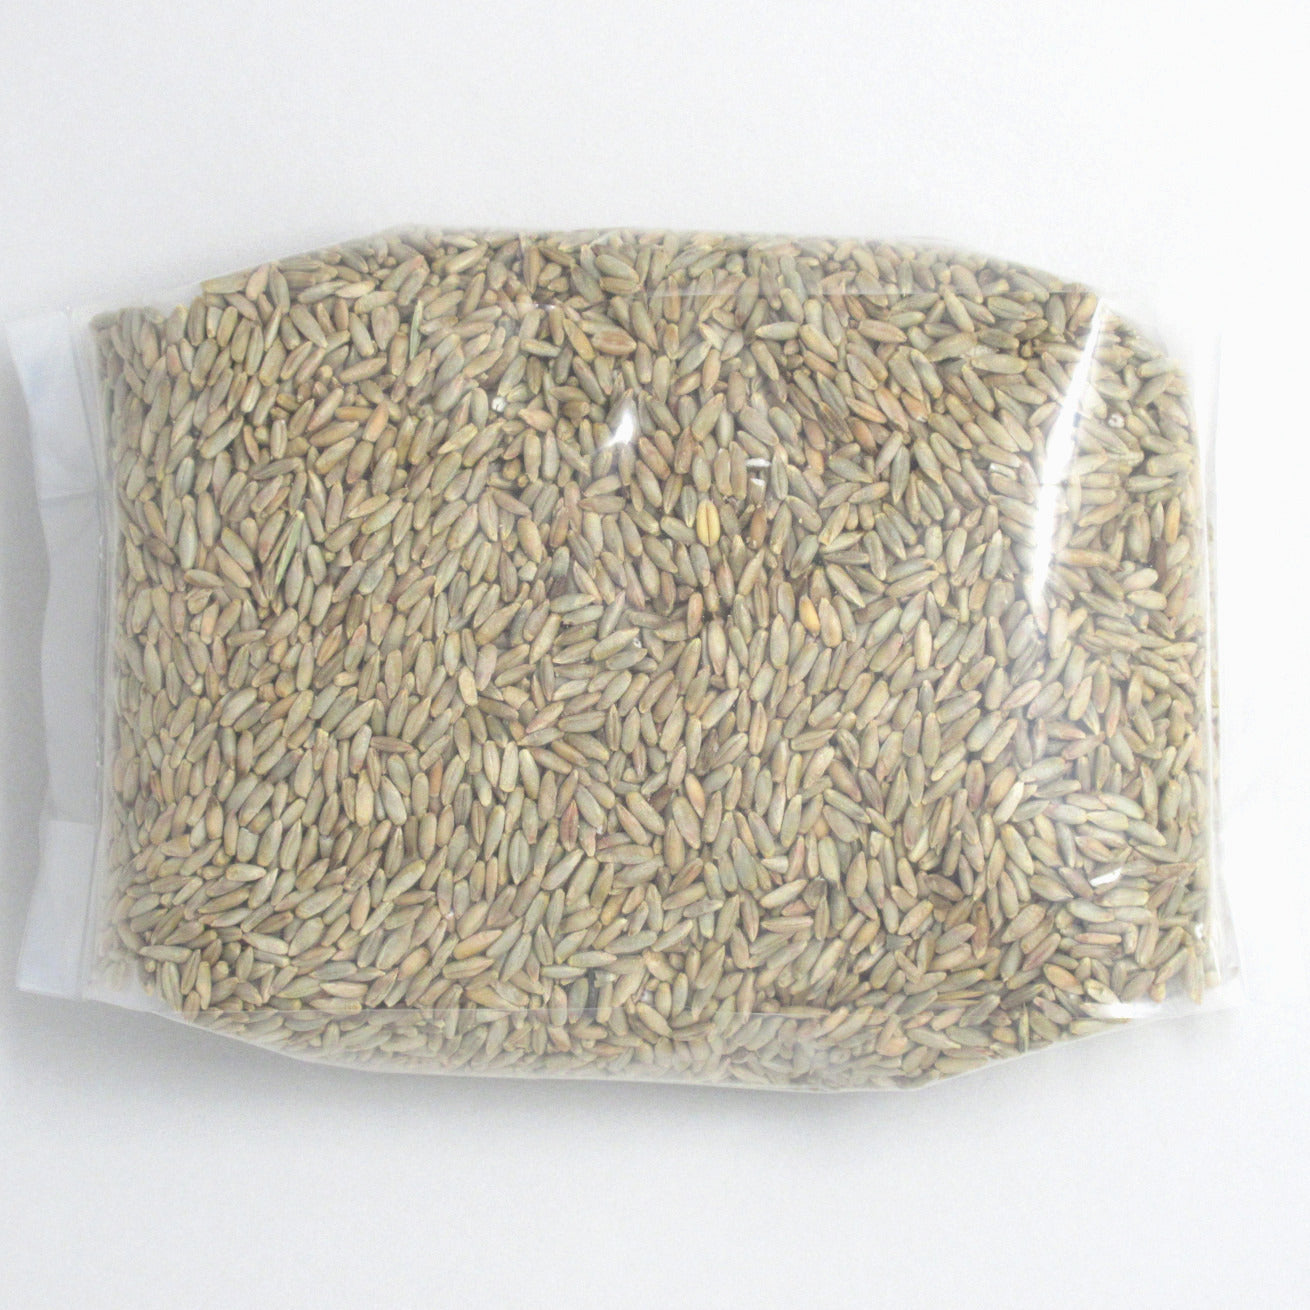 Flour Barrel product image - Rye Kernels